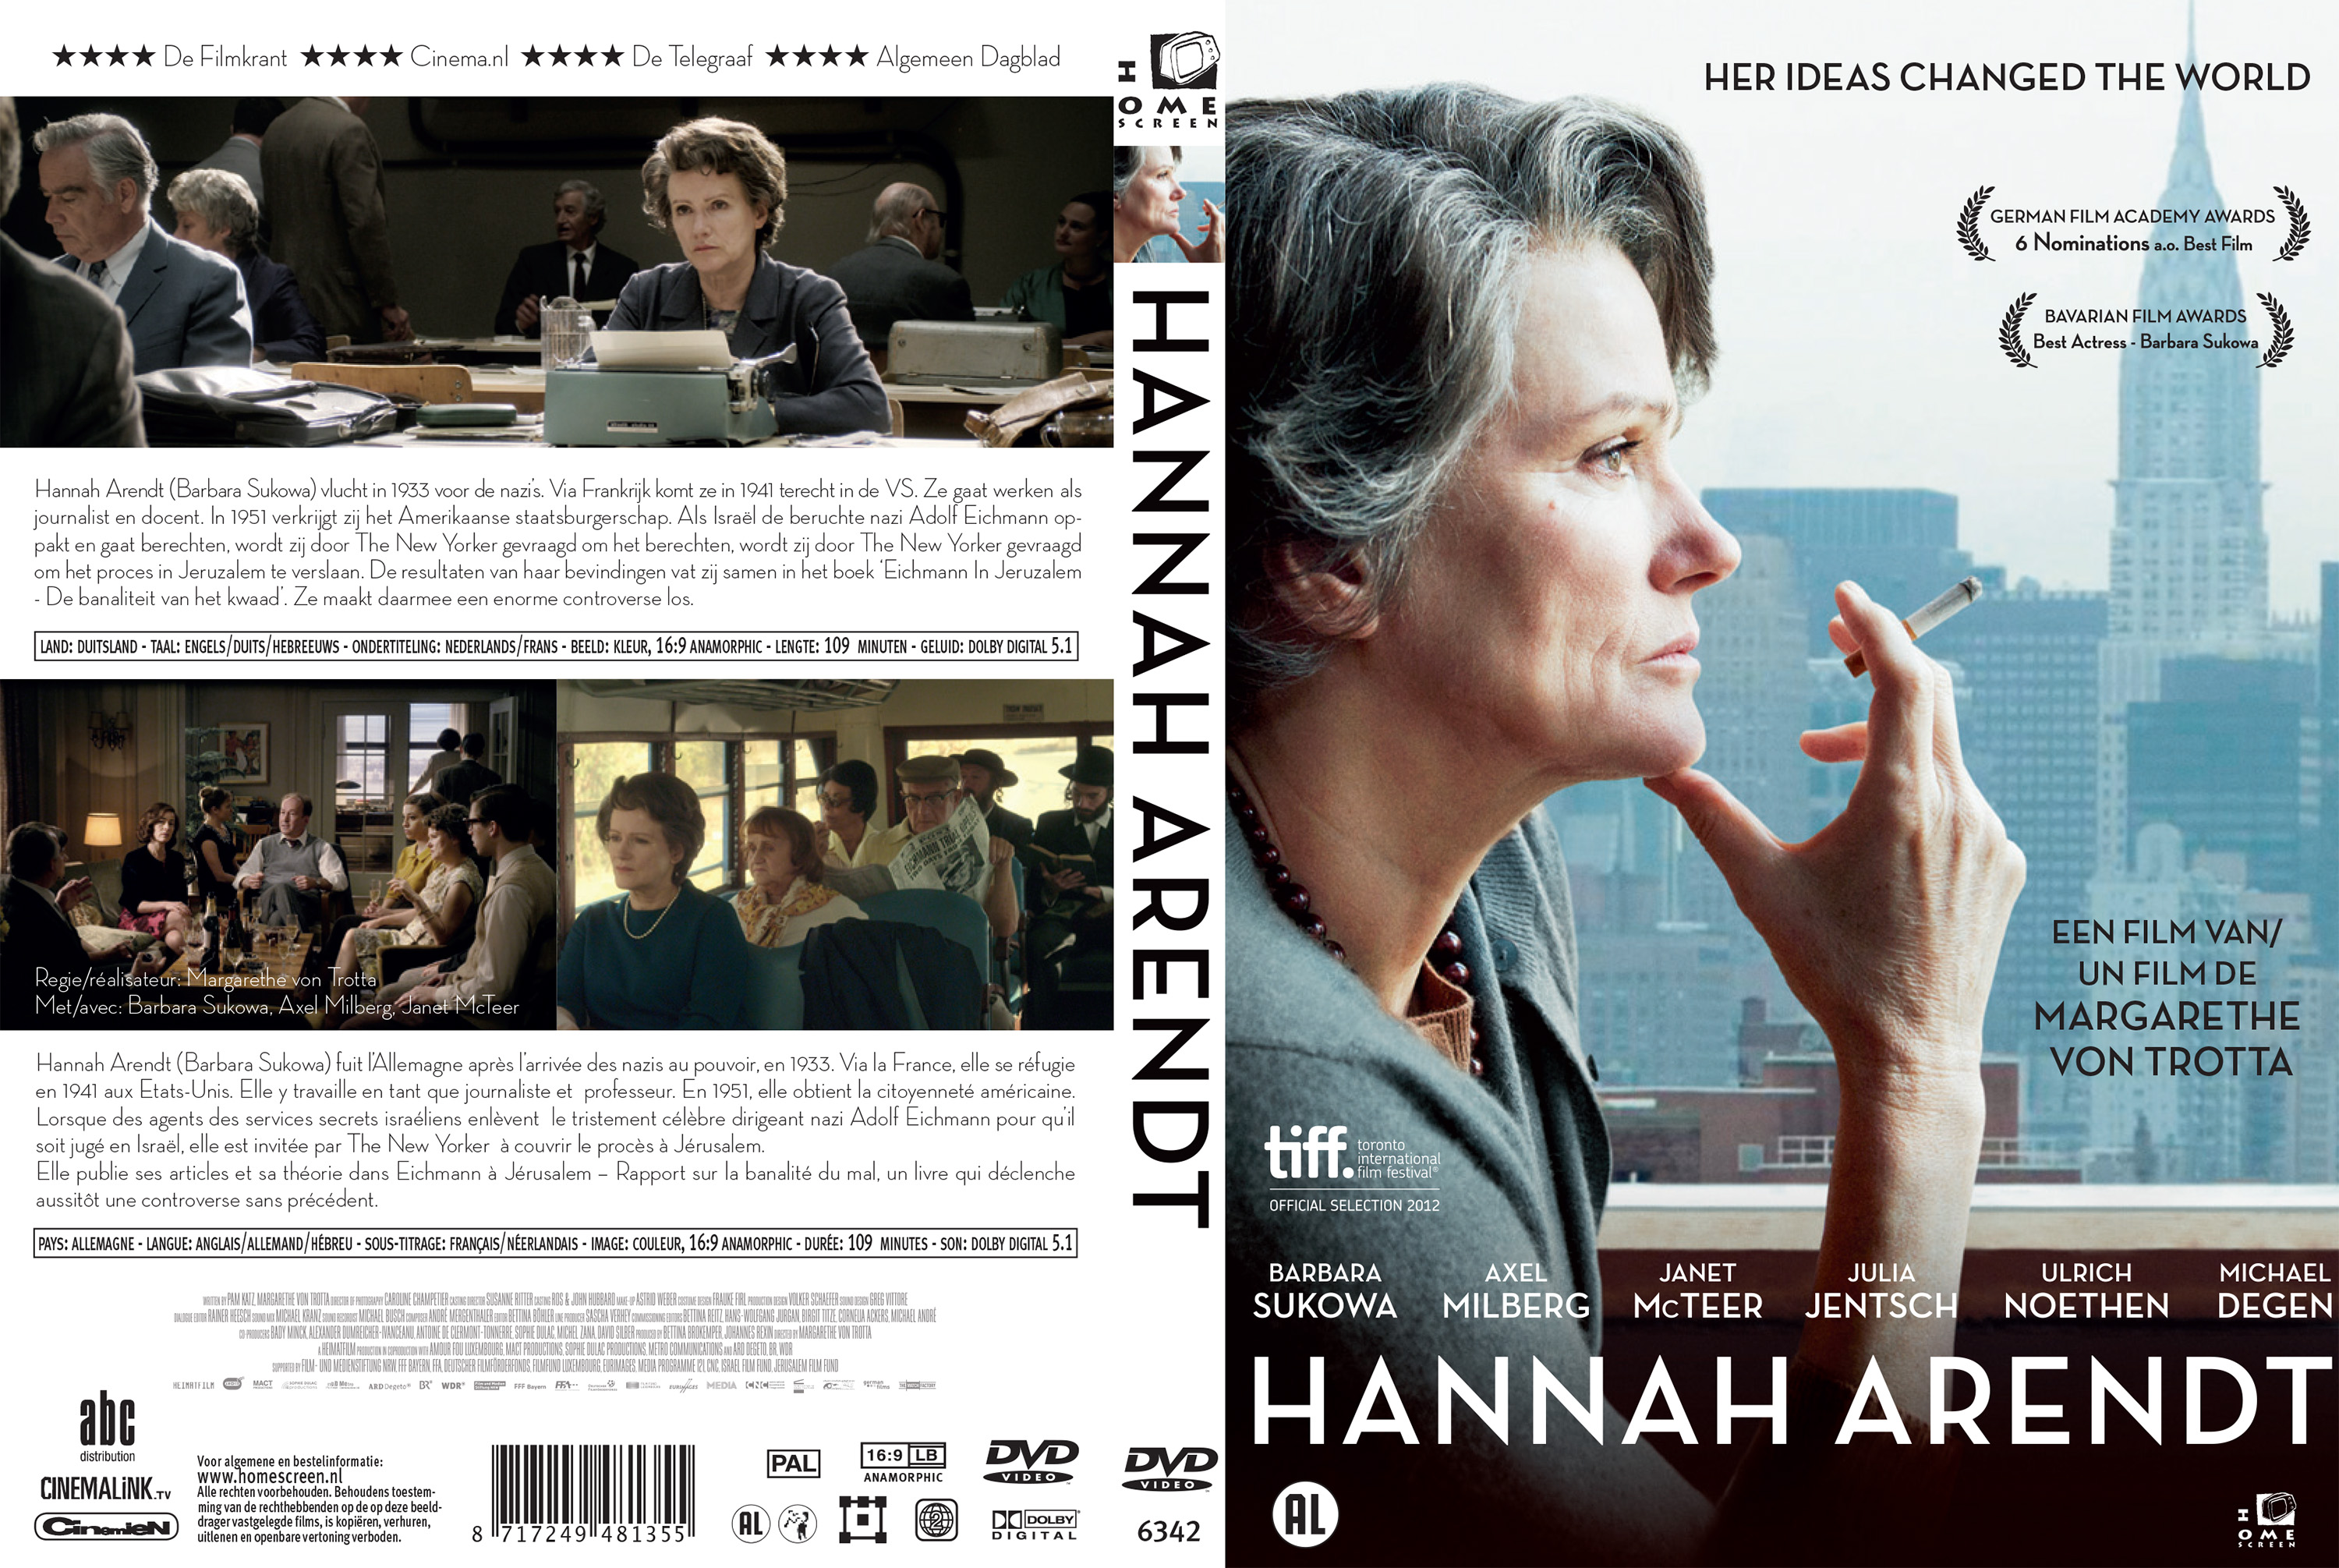 Jaquette DVD Hannah Arendt custom v2